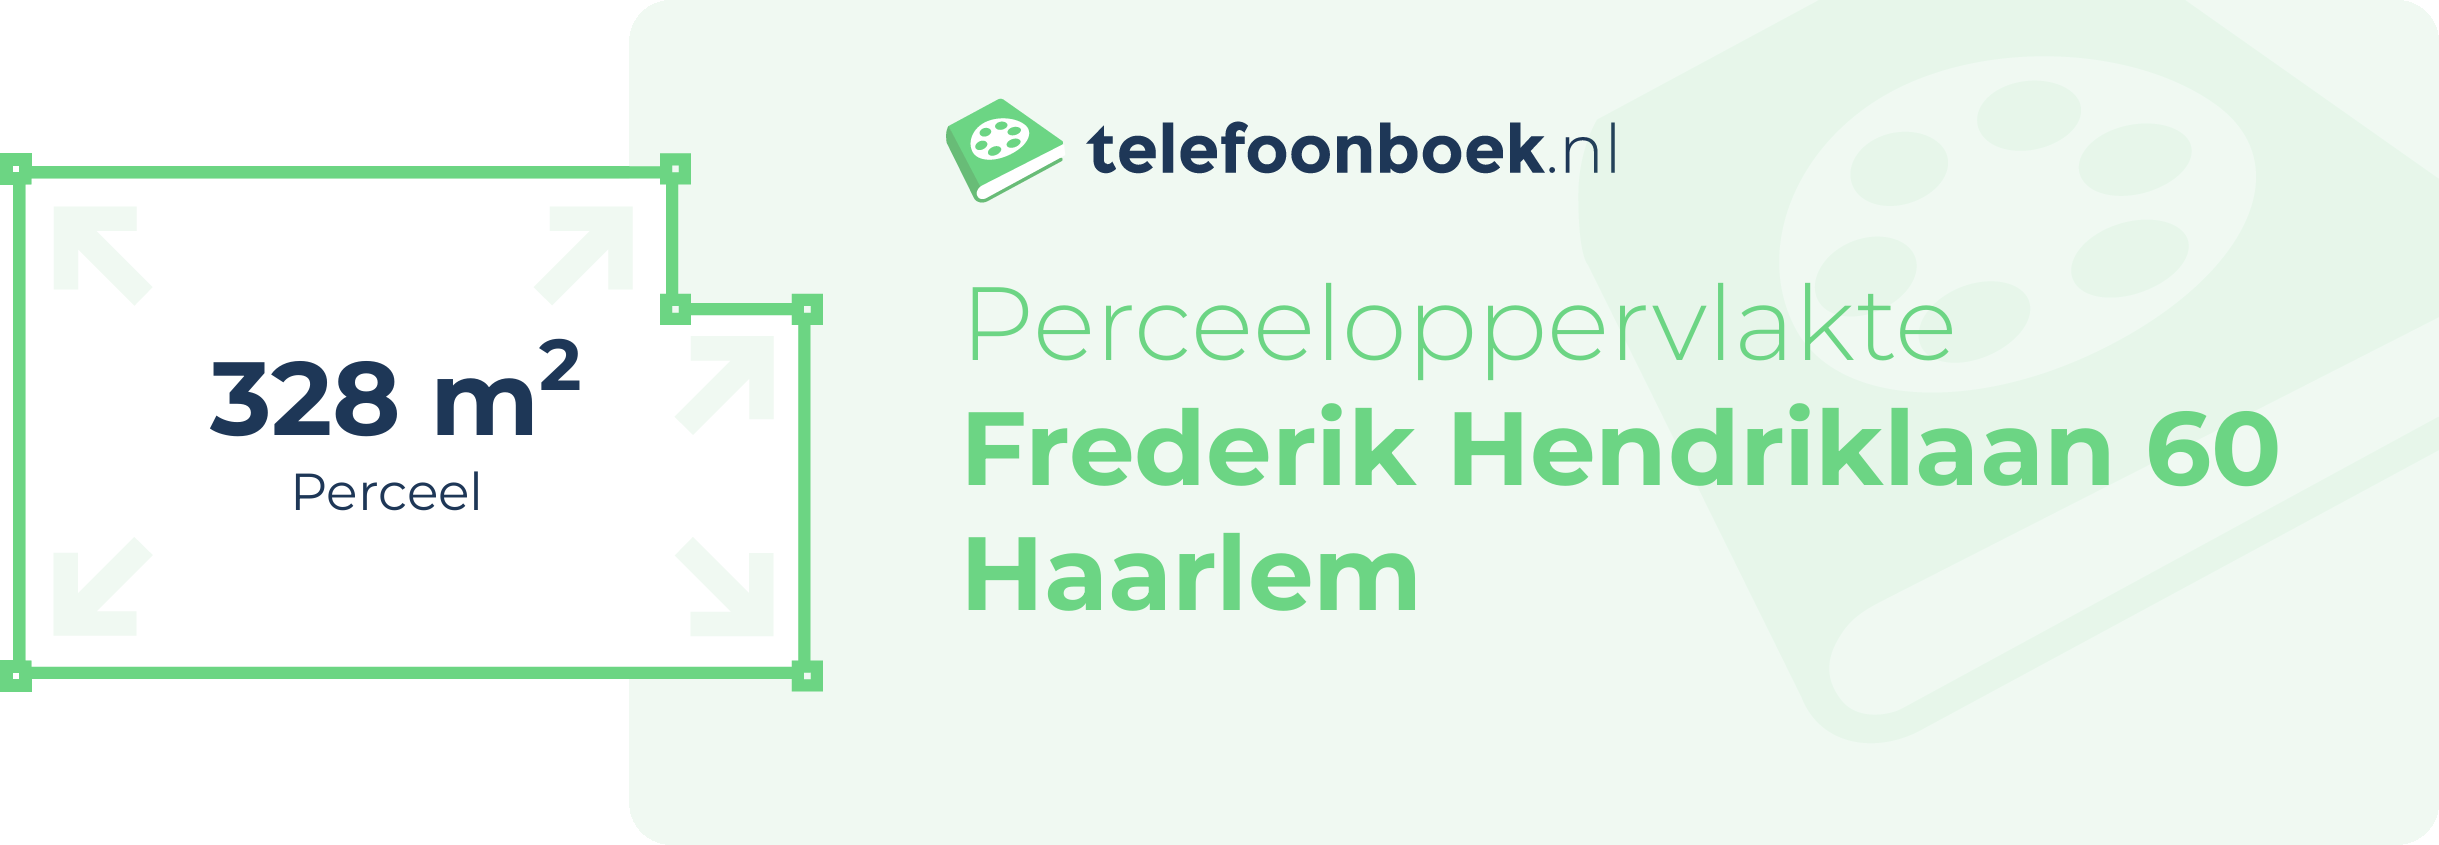 Perceeloppervlakte Frederik Hendriklaan 60 Haarlem